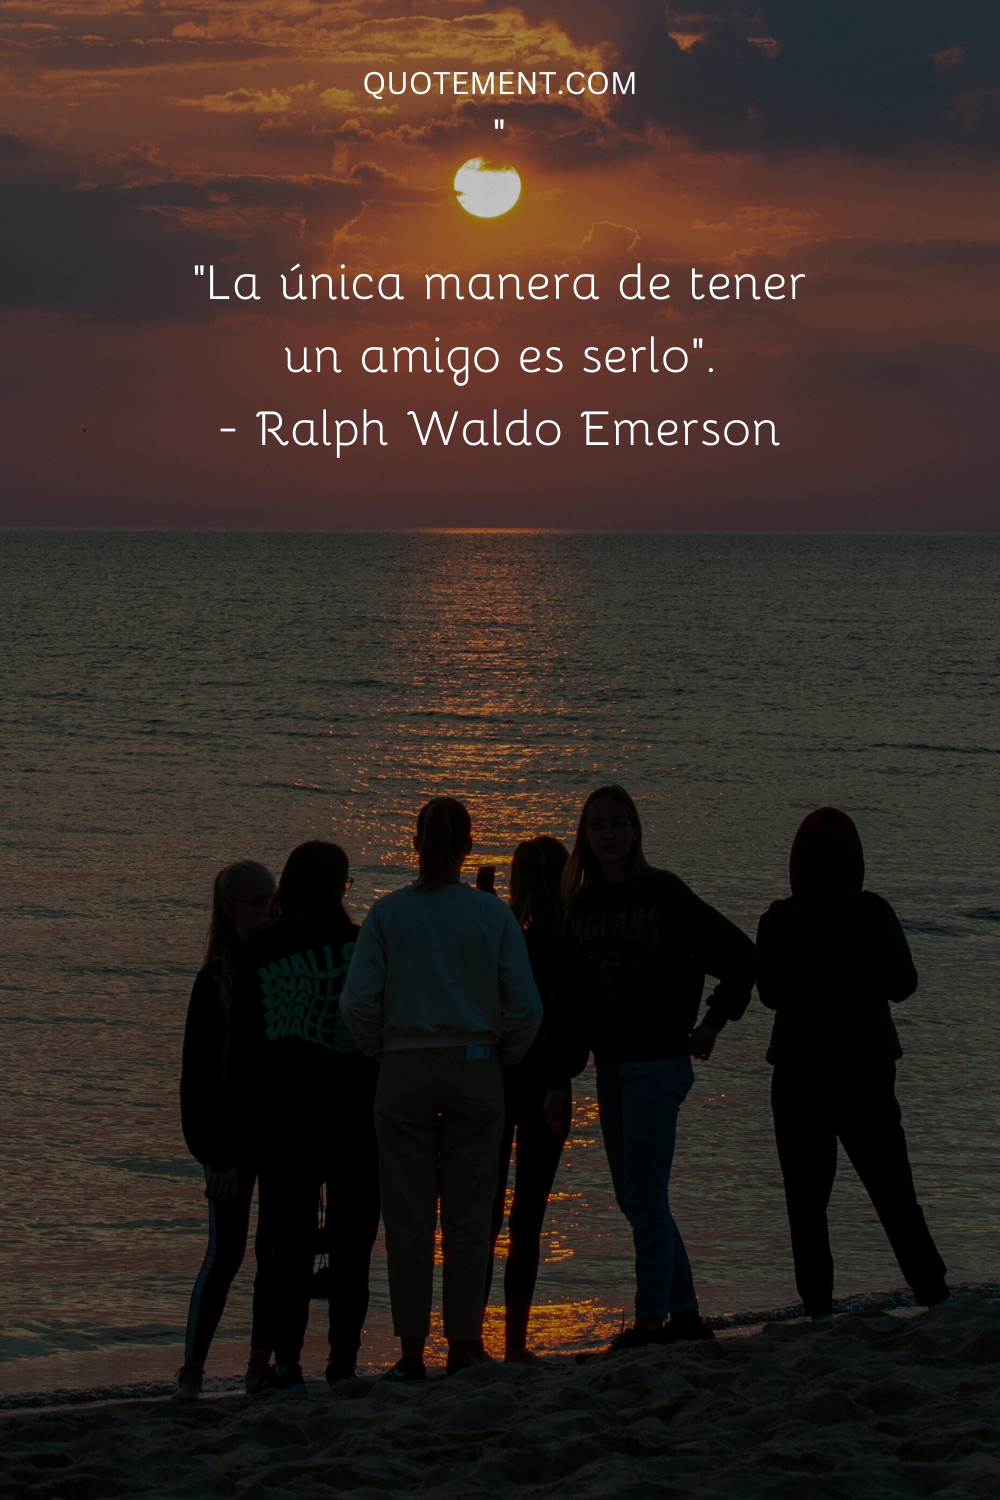 "La única manera de tener un amigo es serlo". - Ralph Waldo Emerson